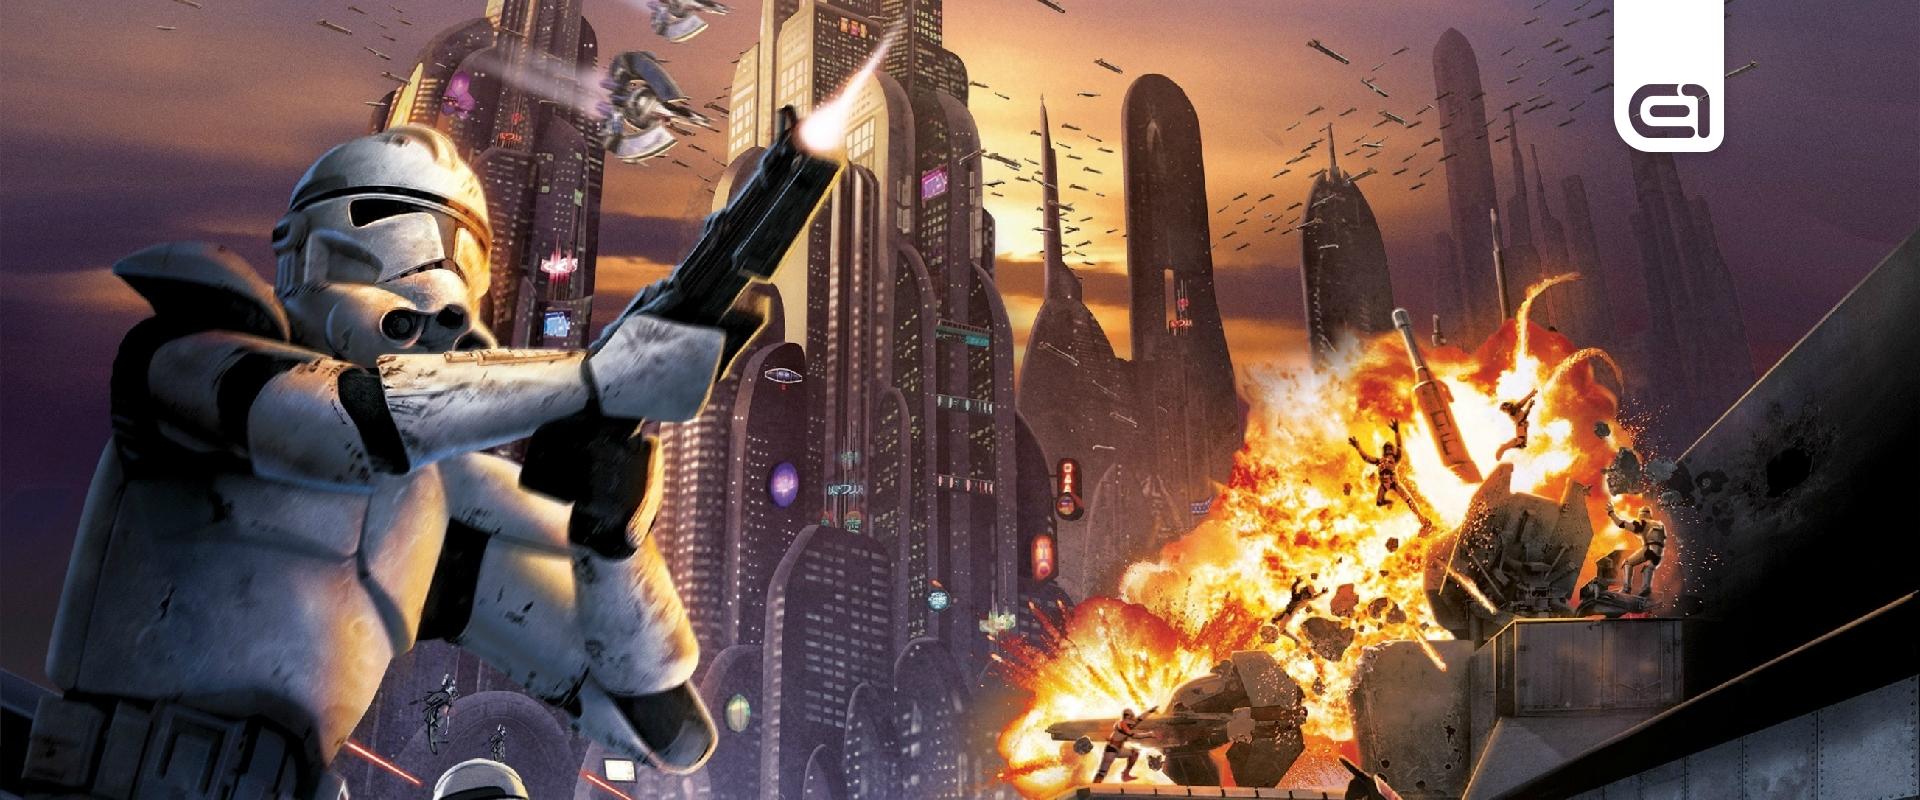 Szinte teljesen kész volt a Star Wars Battlefront 3, mikor inkább törölték a projektet